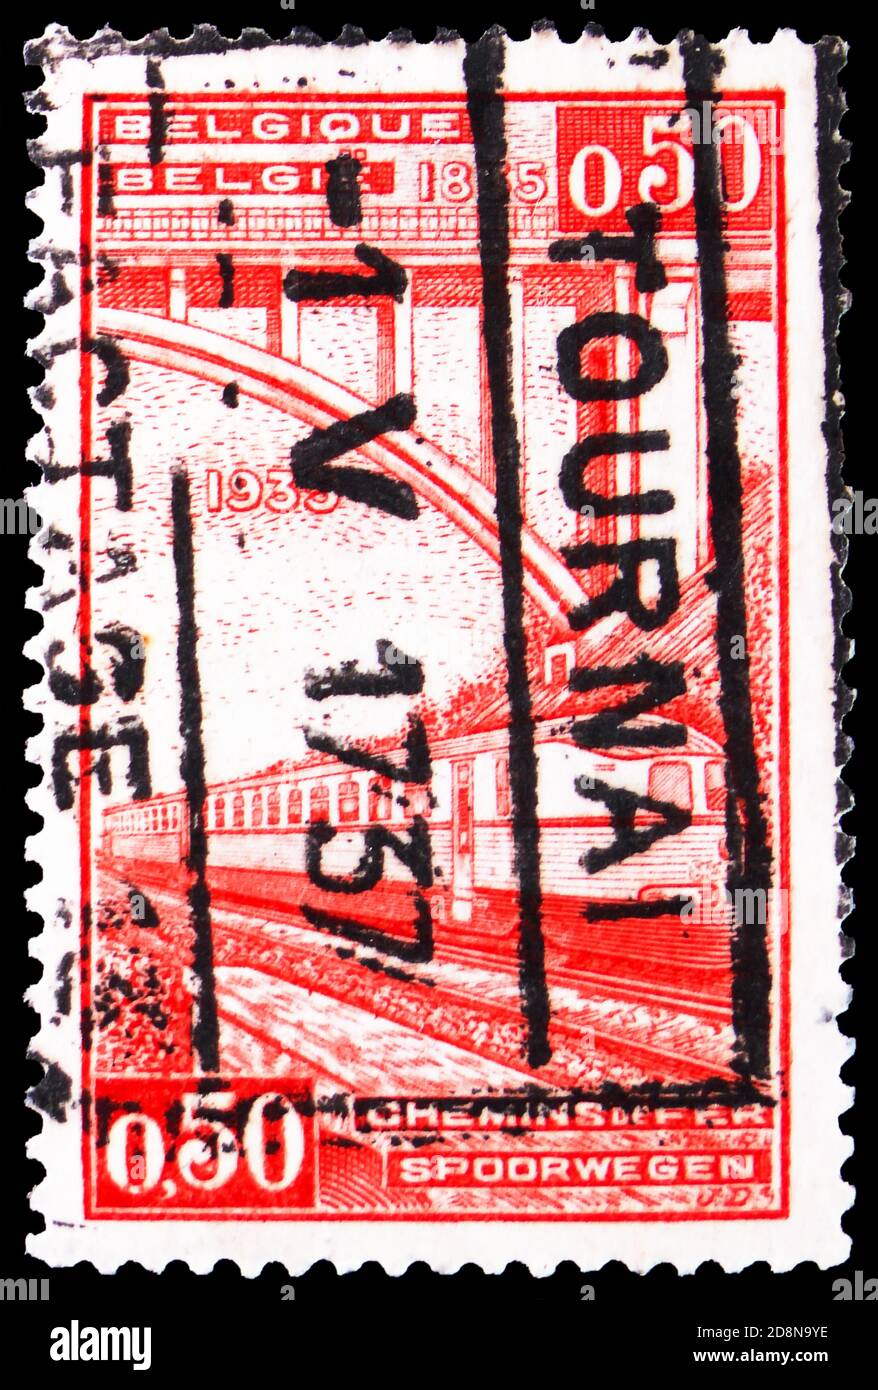 MOSKAU, RUSSLAND - 8. OKTOBER 2020: Briefmarke gedruckt in Belgien zeigt Bahnmarke: 100 Jahre Belgische Eisenbahn, Serie, um 1935 Stockfoto